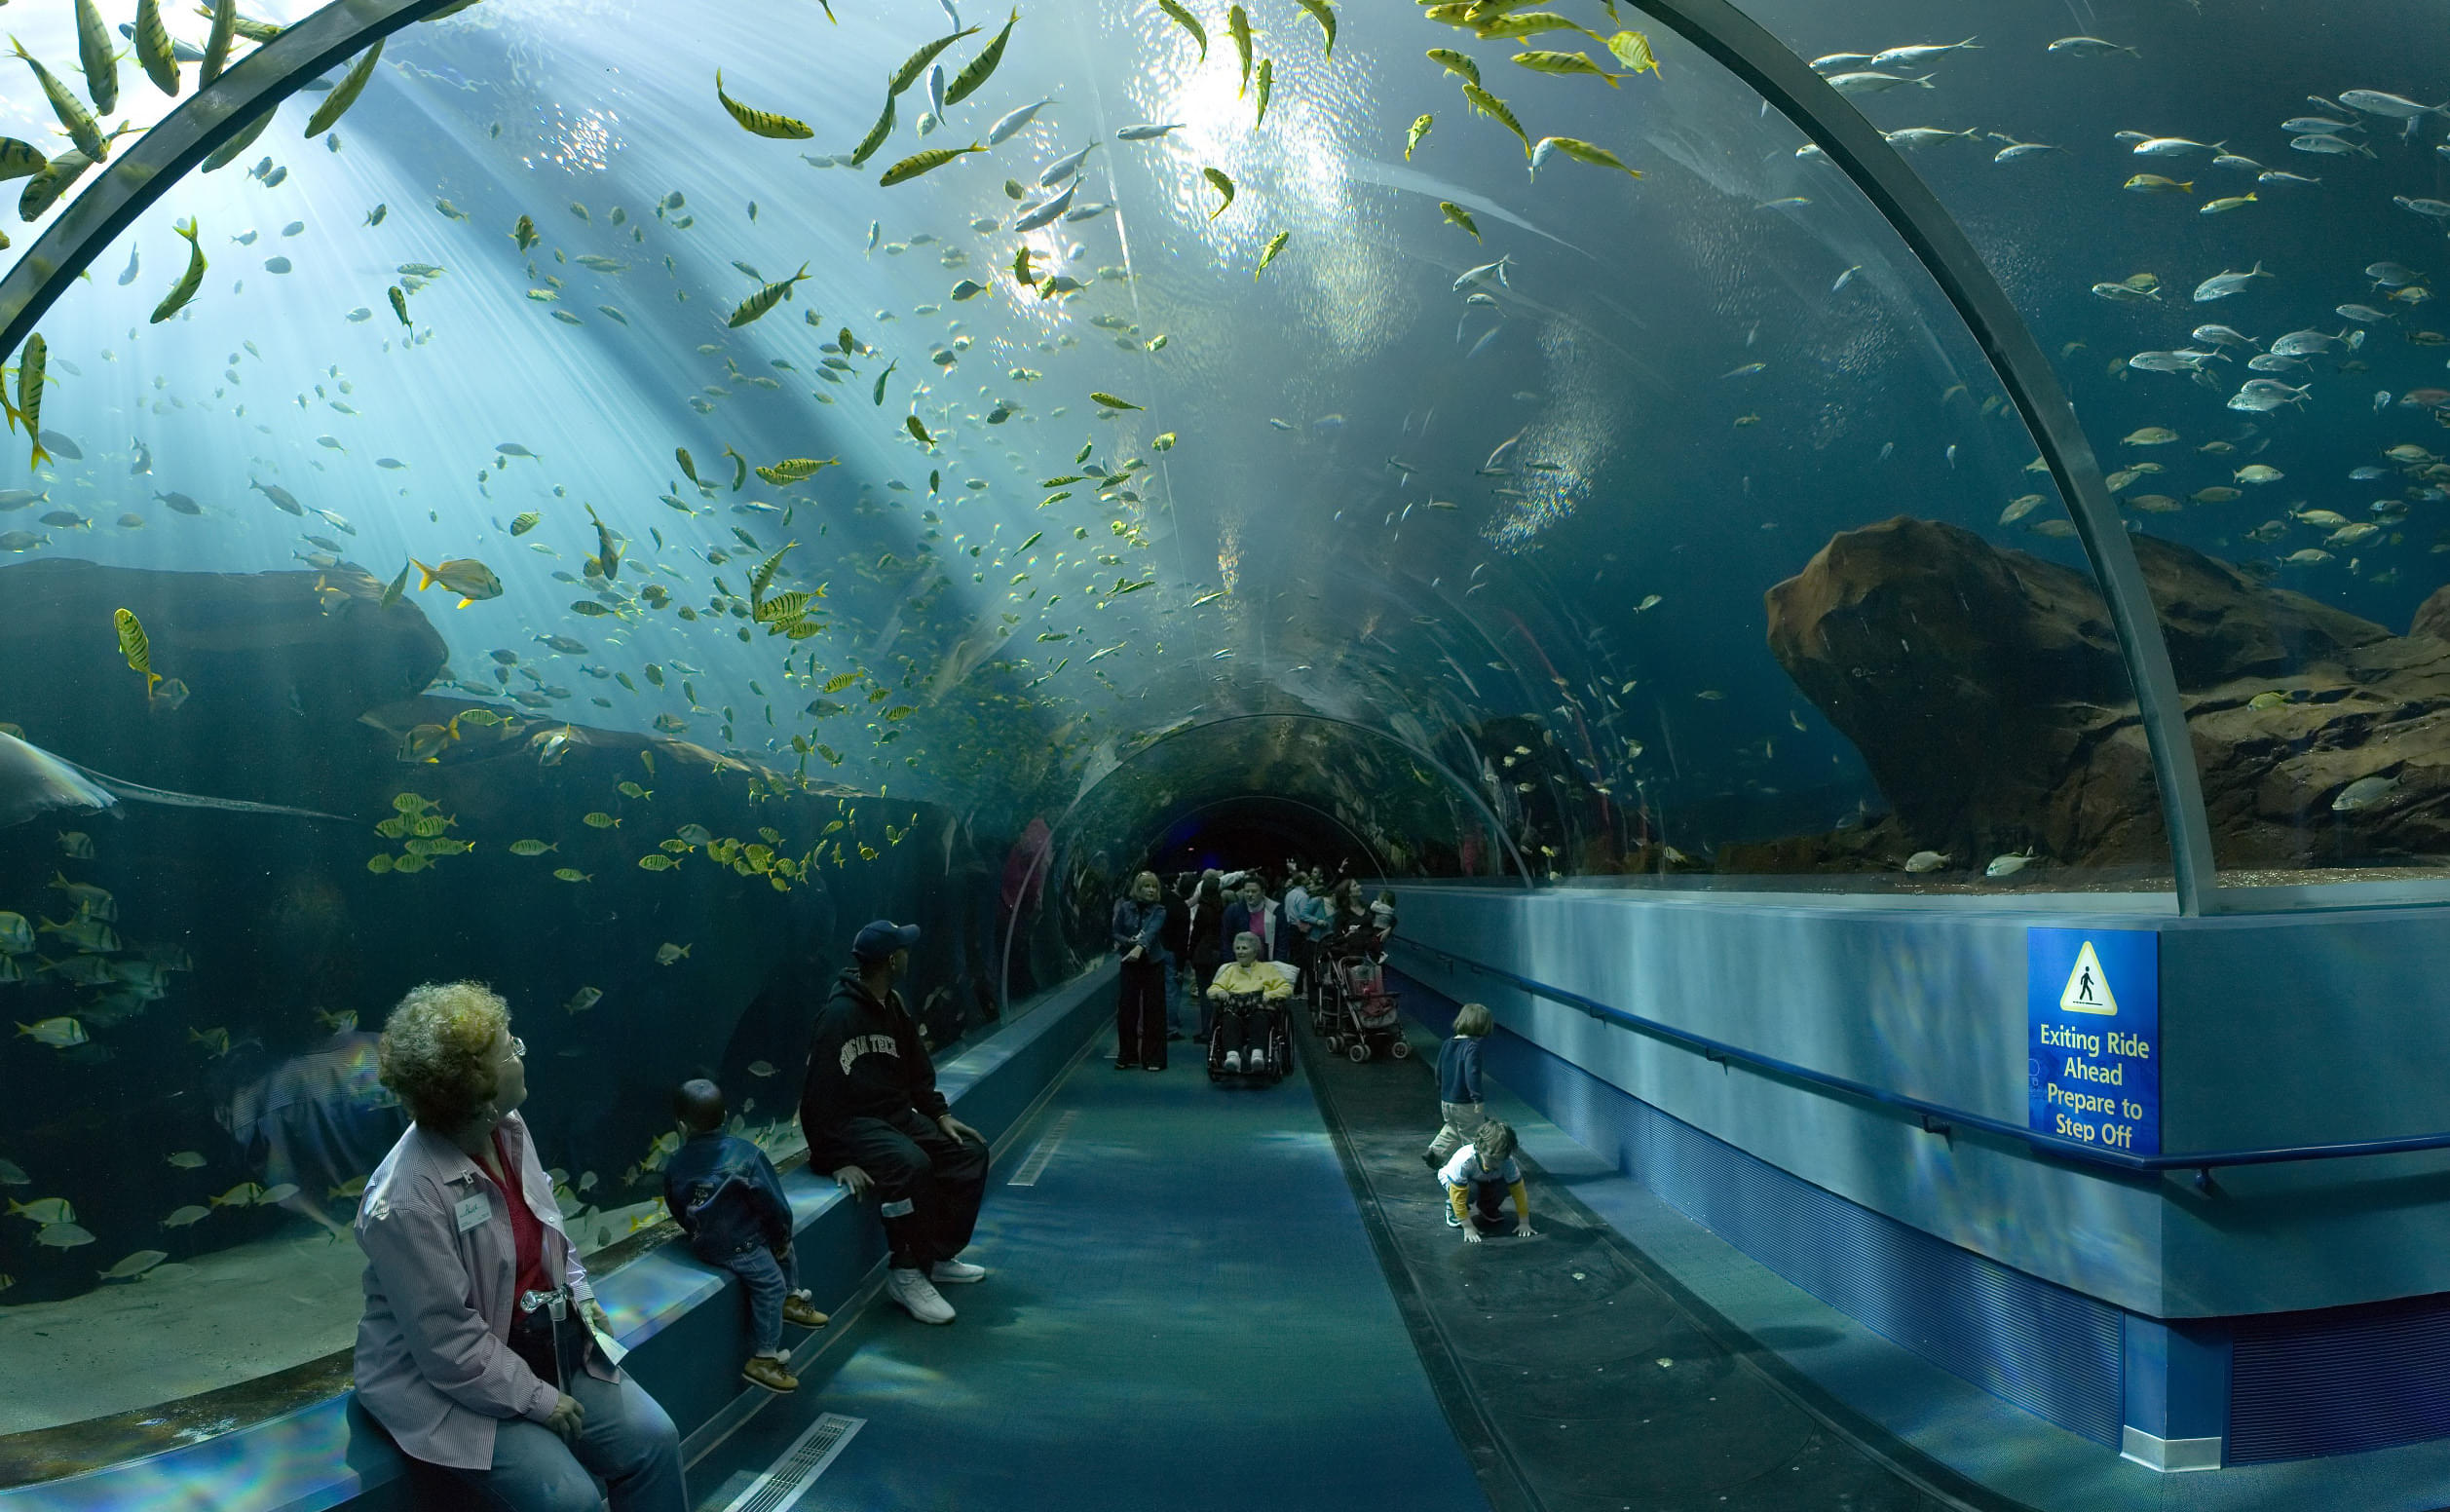 Sea life Aquariums in Australia